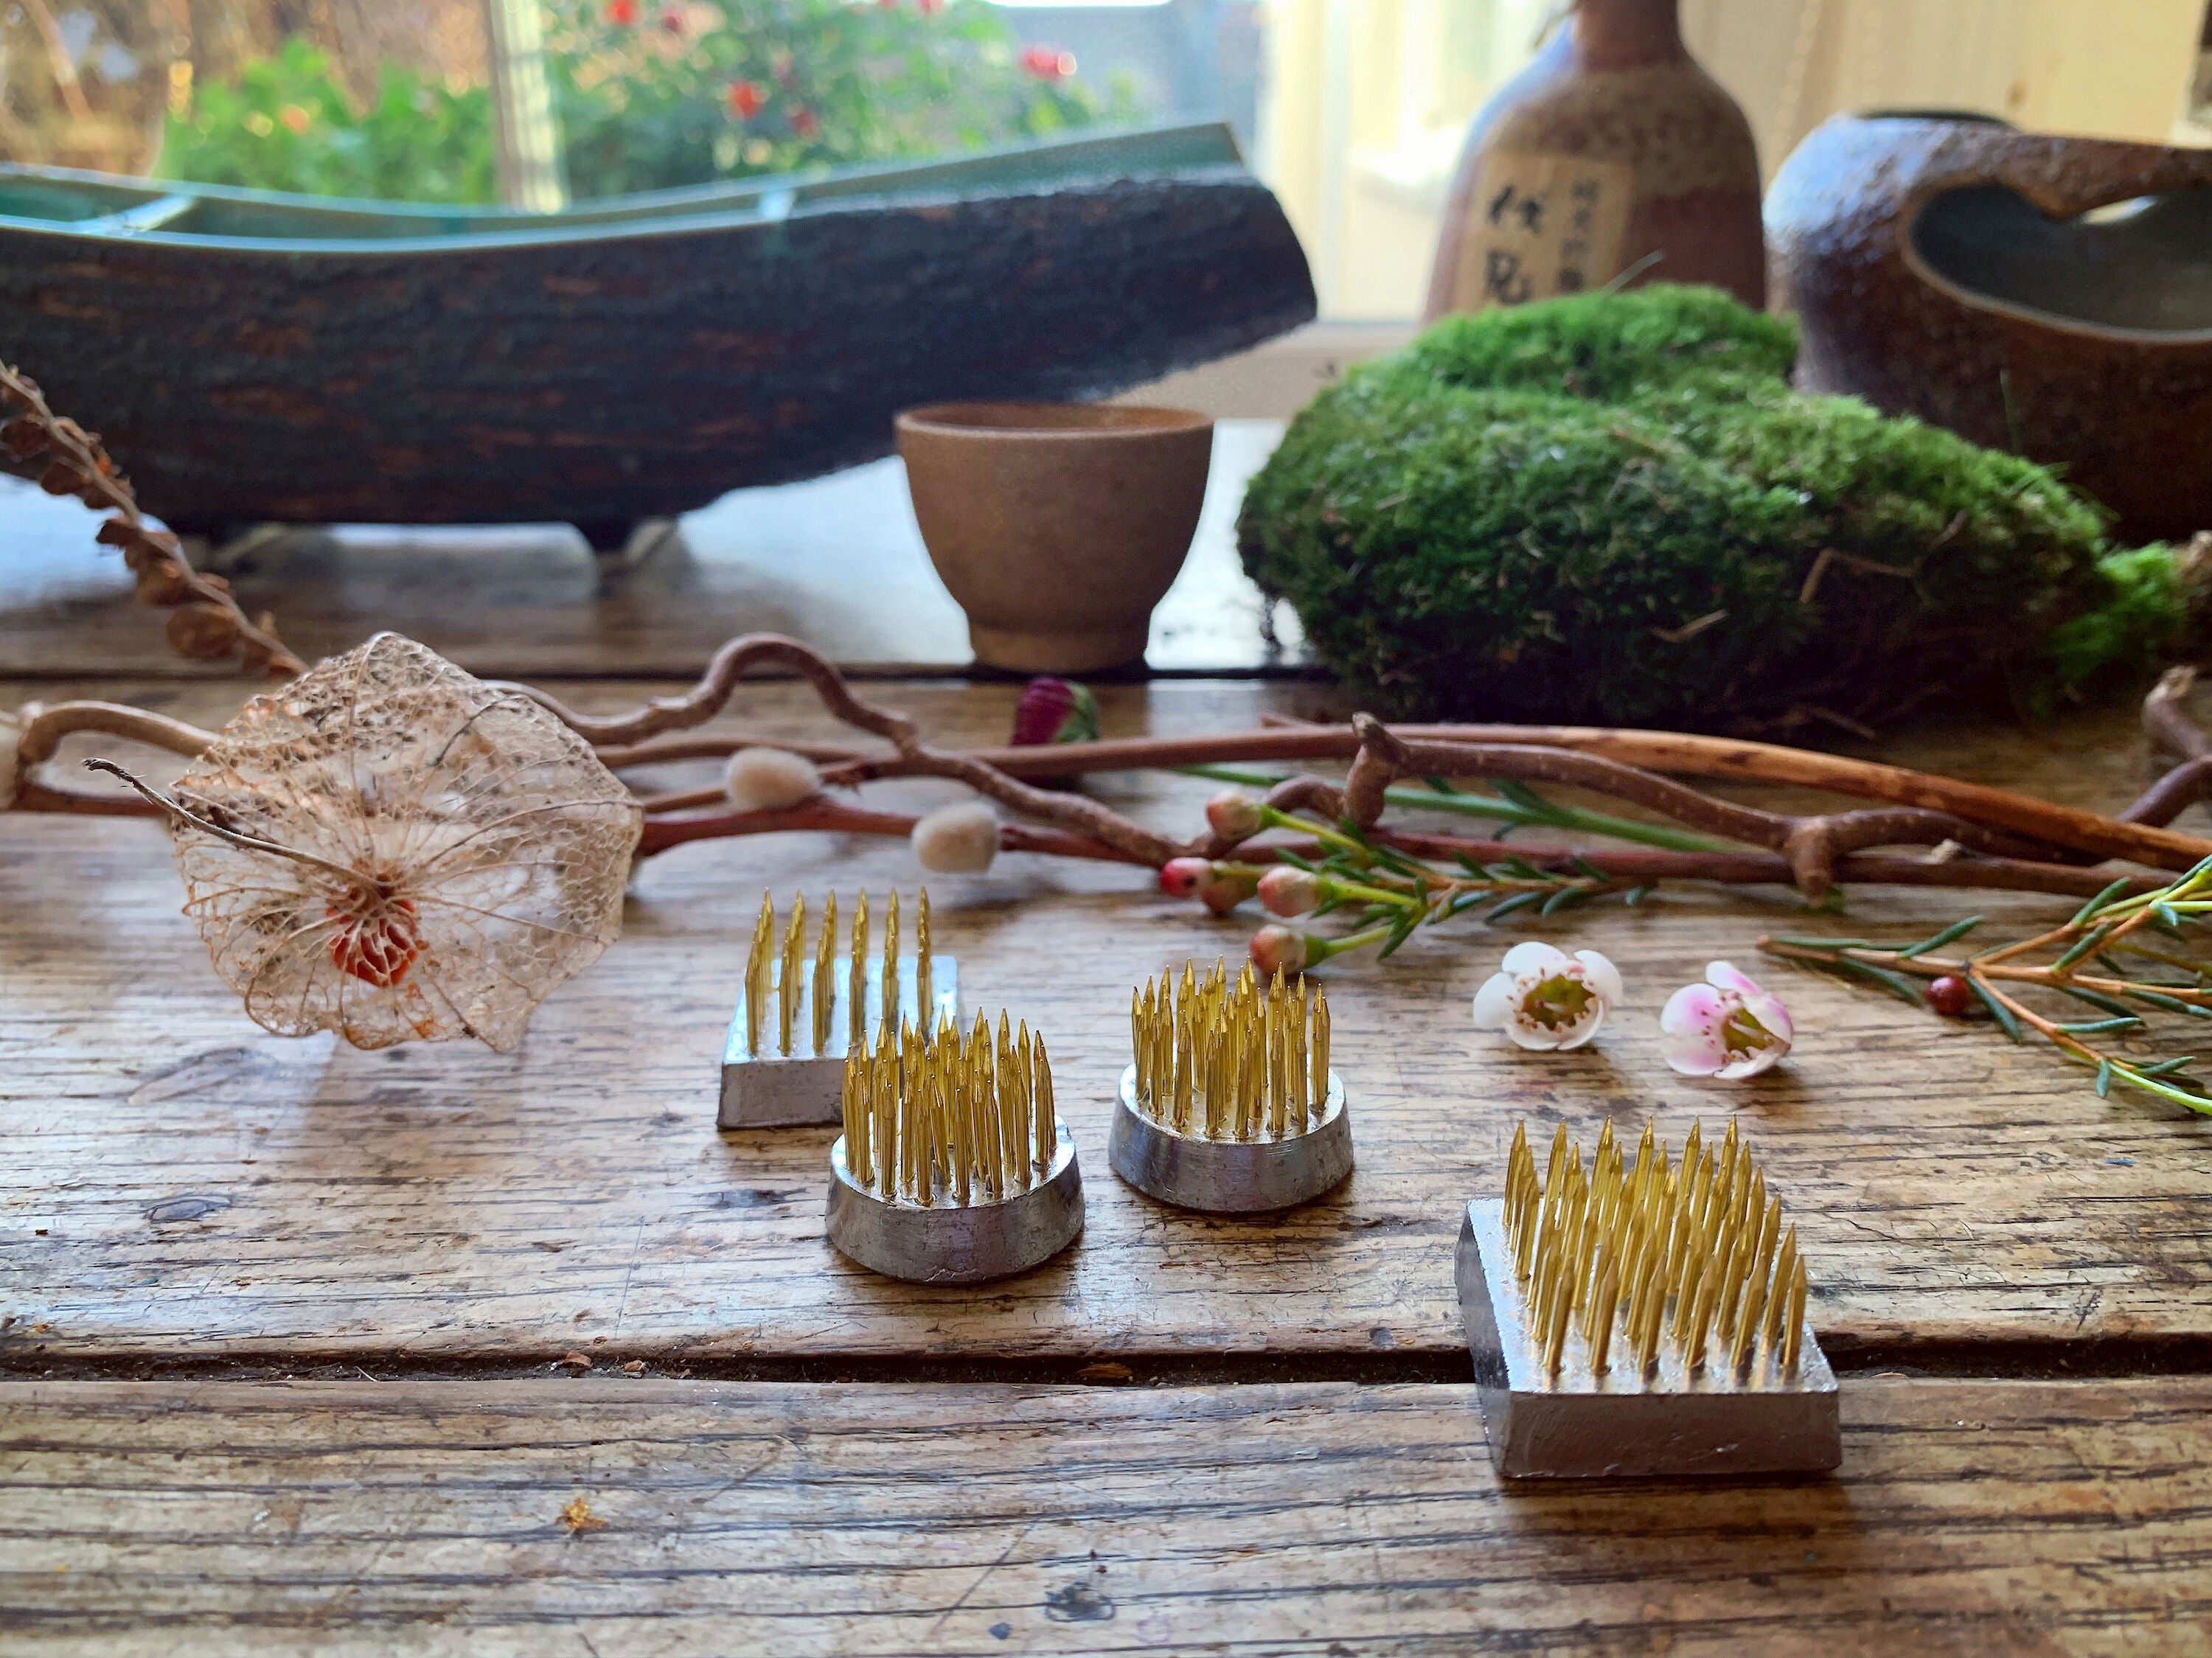 Kenzan Pins for Ikebana Flower Arrangements Long